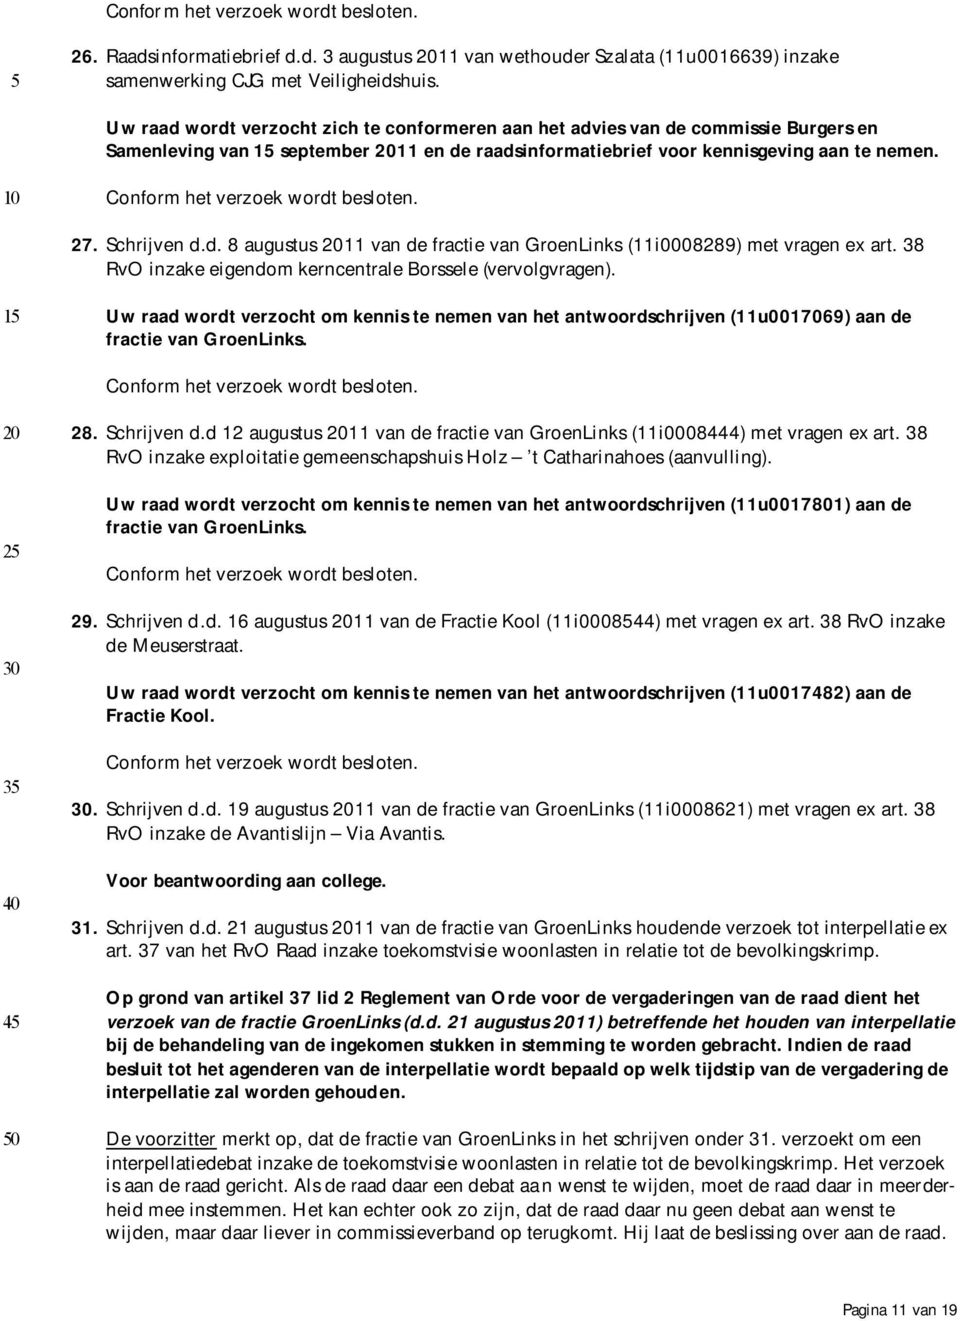 38 RvO inzake eigendom kerncentrale Borssele (vervolgvragen). Uw raad wordt verzocht om kennis te nemen van het antwoordschrijven (11u0017069) aan de fractie van GroenLinks. 28. Schrijven d.